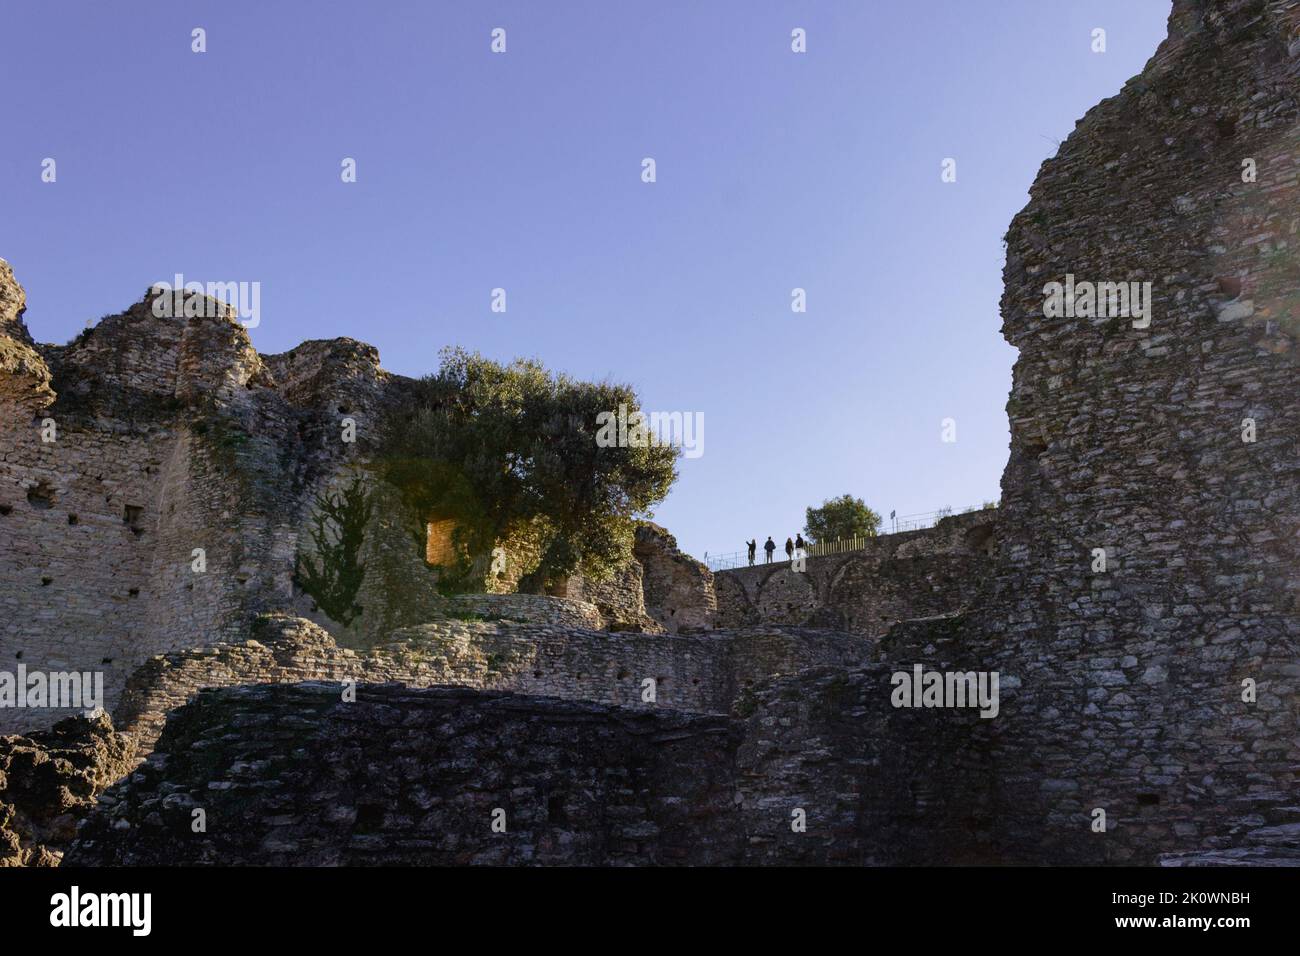 Vue panoramique sur les ruines romaines anciennes de Sirmione, en Italie. Personnes fortuites en silhouette sur l'arrière-plan. Copier l'espace. Banque D'Images